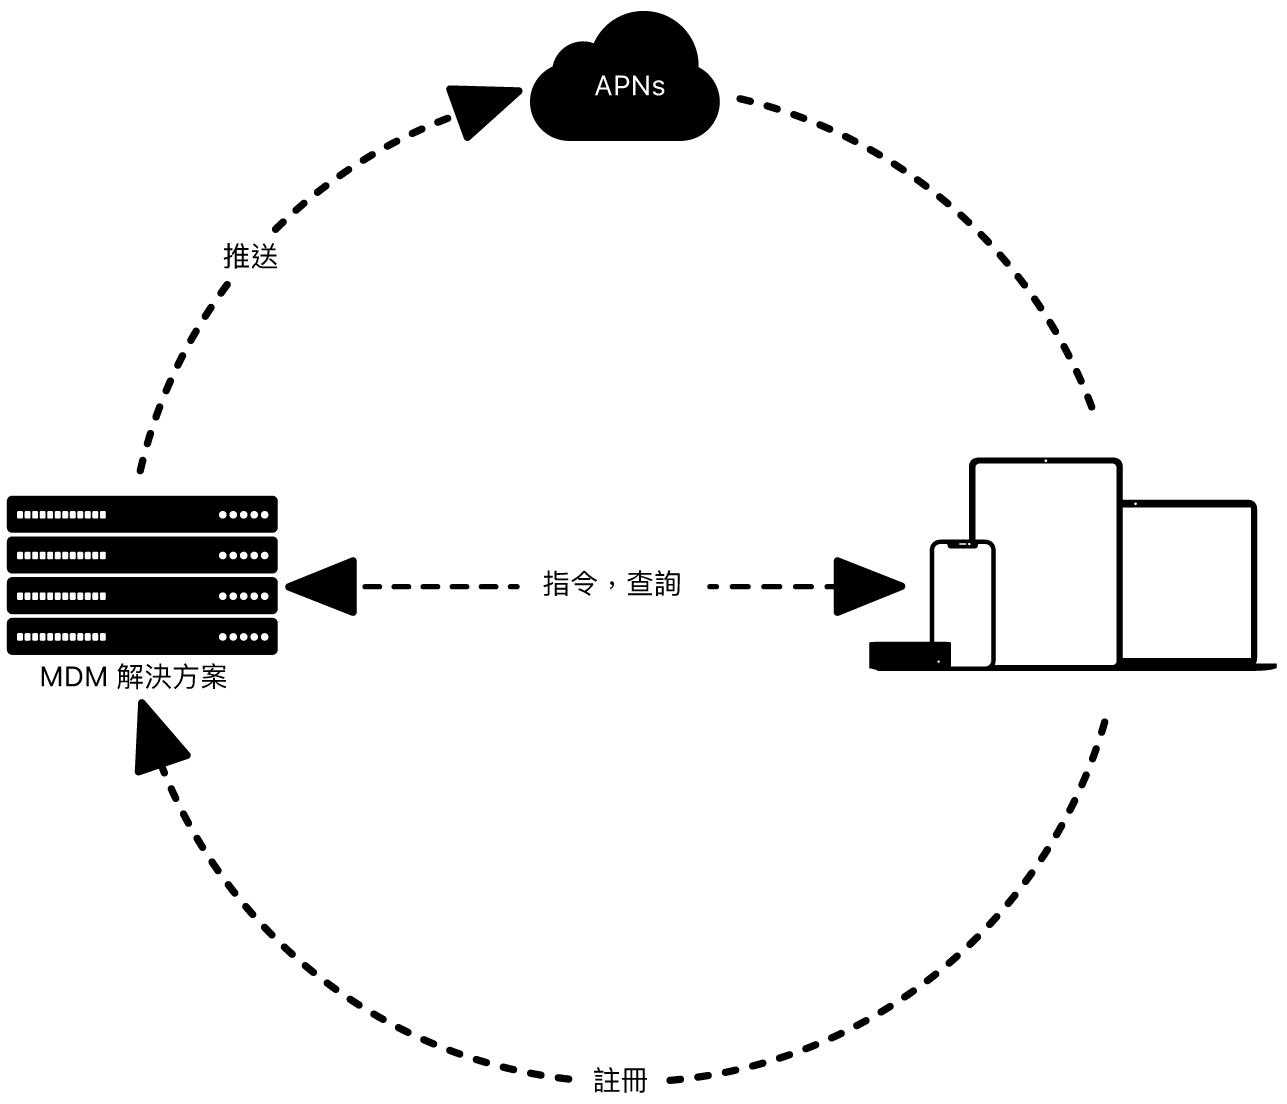 圖表顯示如何配搭 MDM 解決方案使用 APNs。